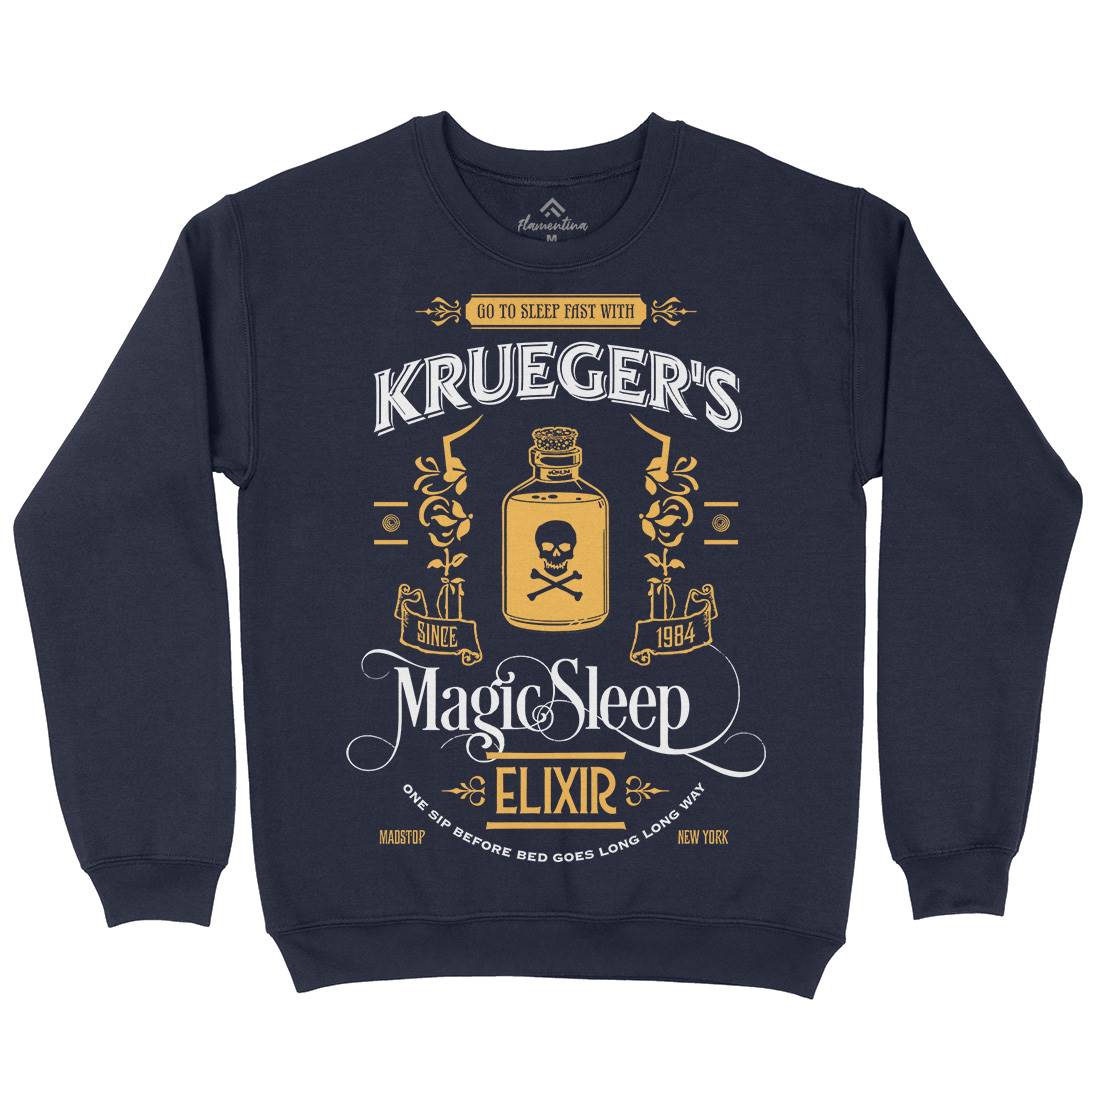 Kruegers Elixir Kids Crew Neck Sweatshirt Horror D214